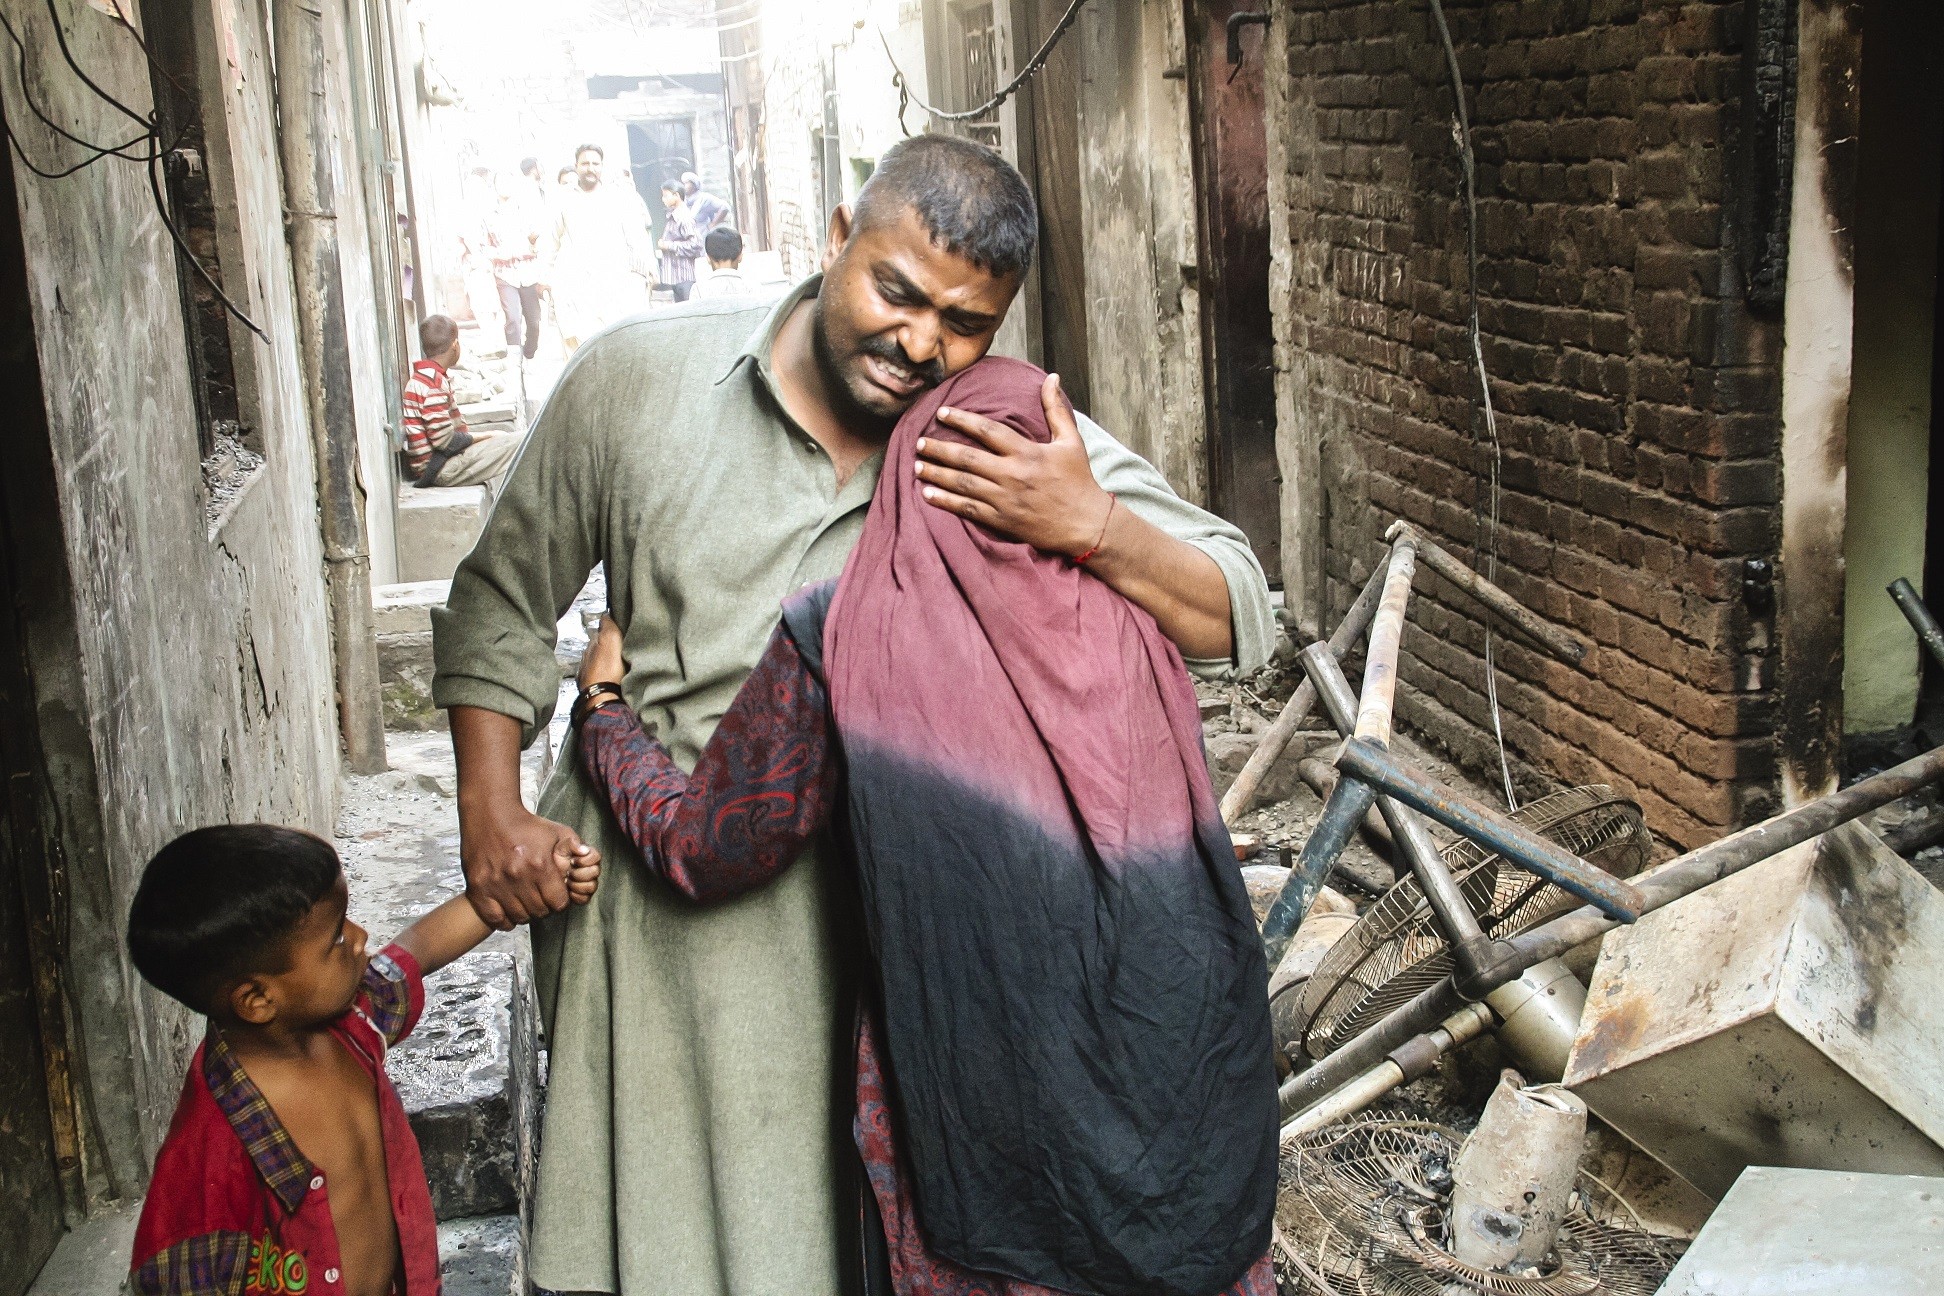 Maaliskuussa 2013 huhu jumalanpilkasta johti 175 kristityn kodin tuhoamiseen ja satojen kristittyjen pakenemiseen Lahoressa. 